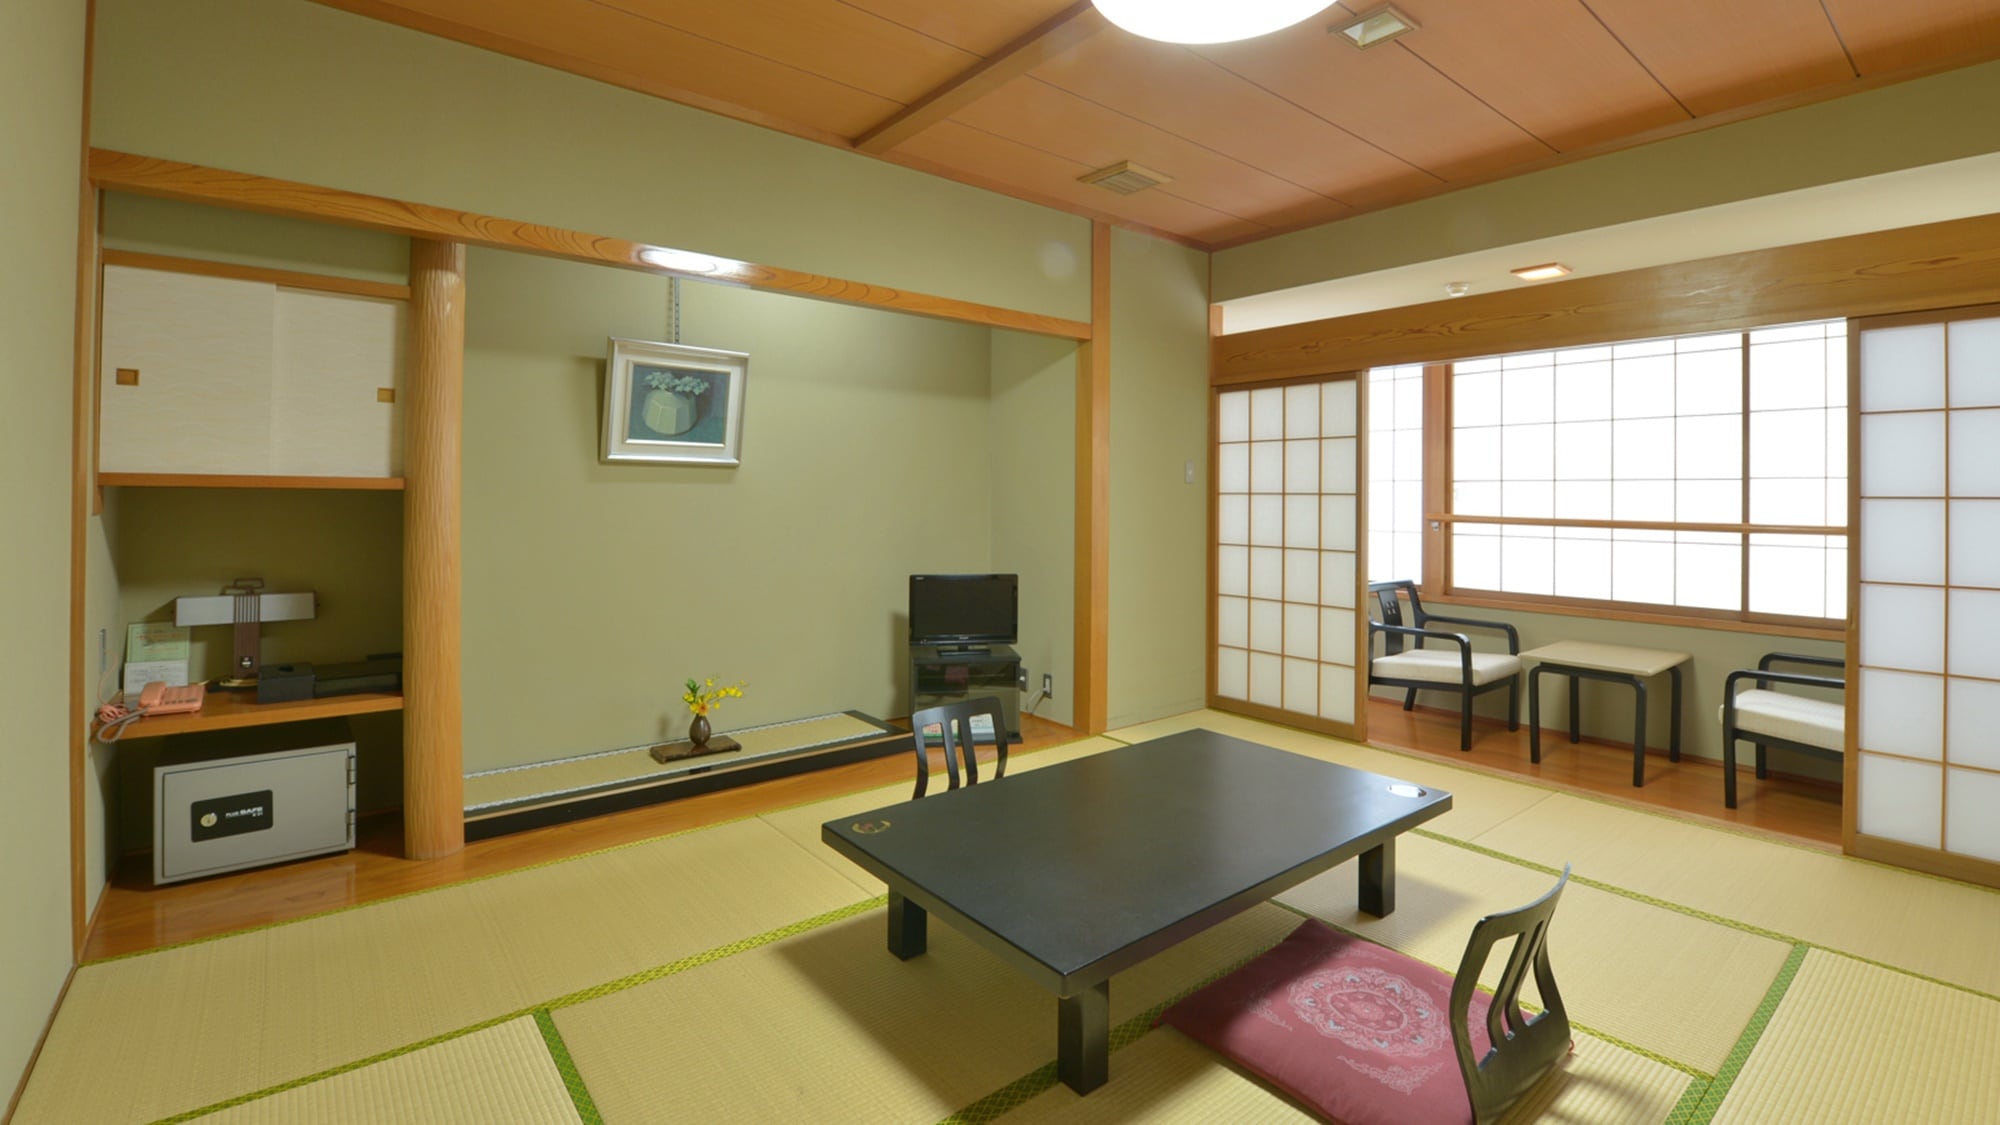 * [ตัวอย่างเสื่อทาทามิ 10 ผืนในห้องสไตล์ญี่ปุ่น] โปรดพักผ่อนในห้องสไตล์ญี่ปุ่นที่มีกลิ่นหอมของเสื่อทาทามิ